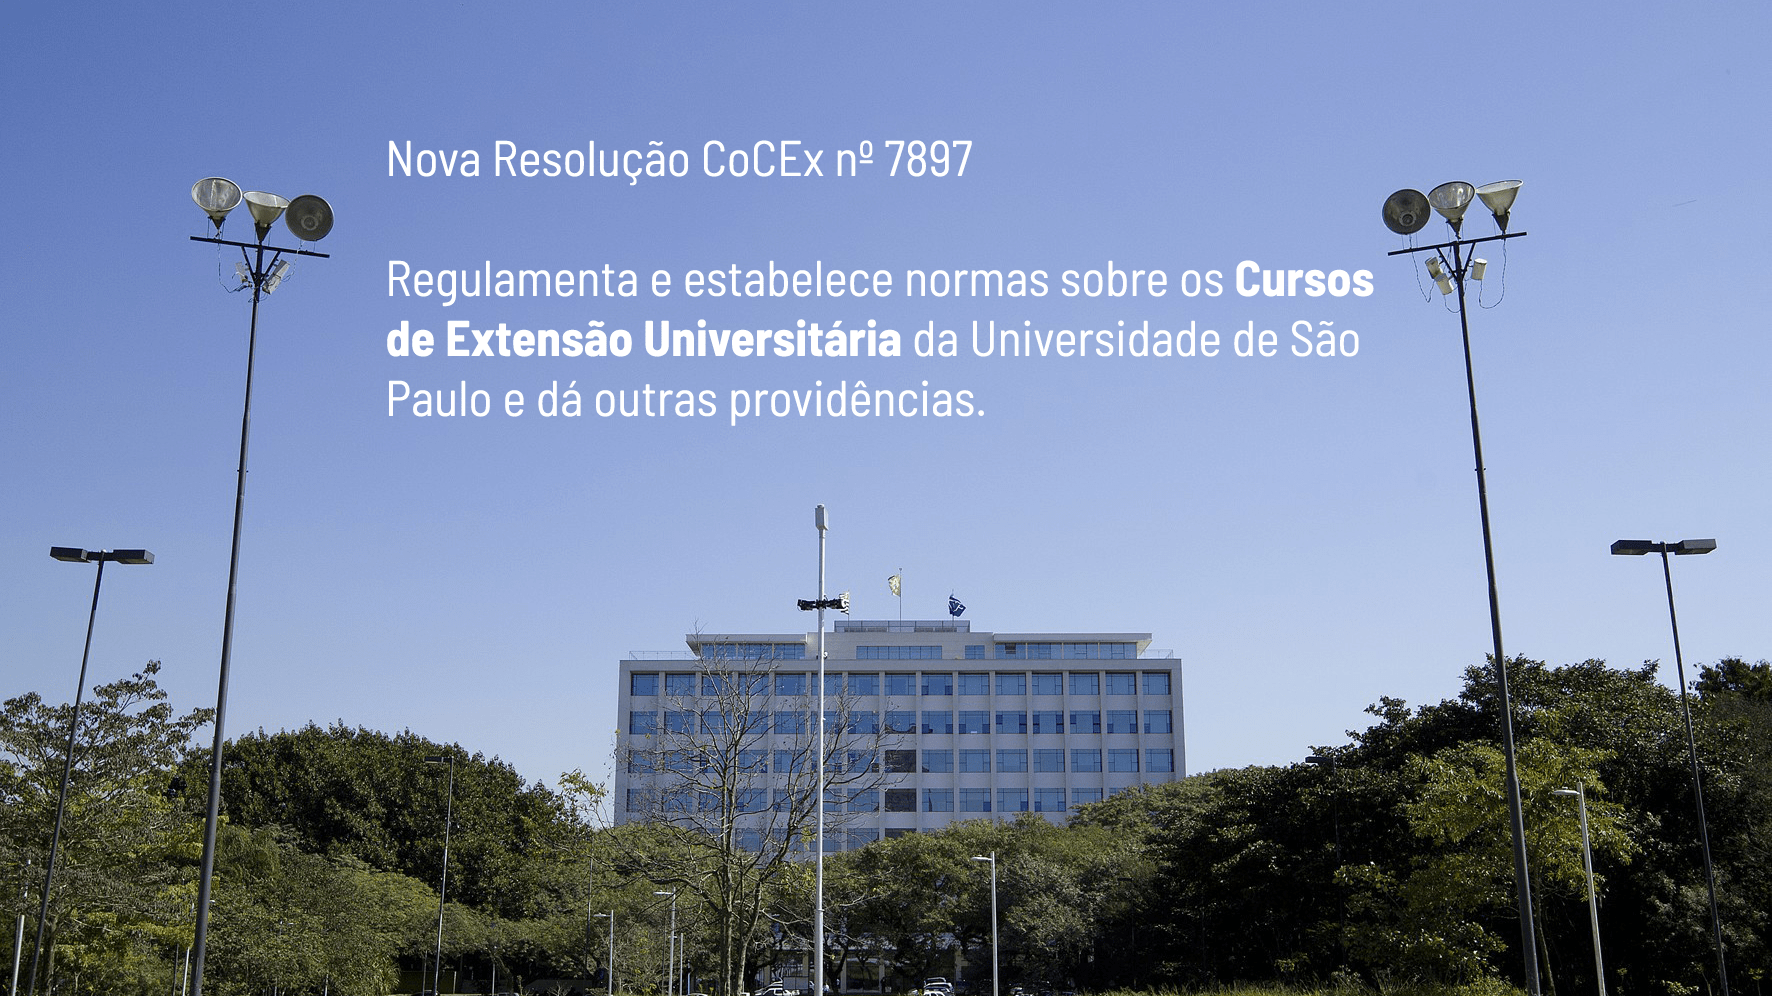 Nova Resolução CoCEx nº 7897 – Cursos de Extensão Universitária